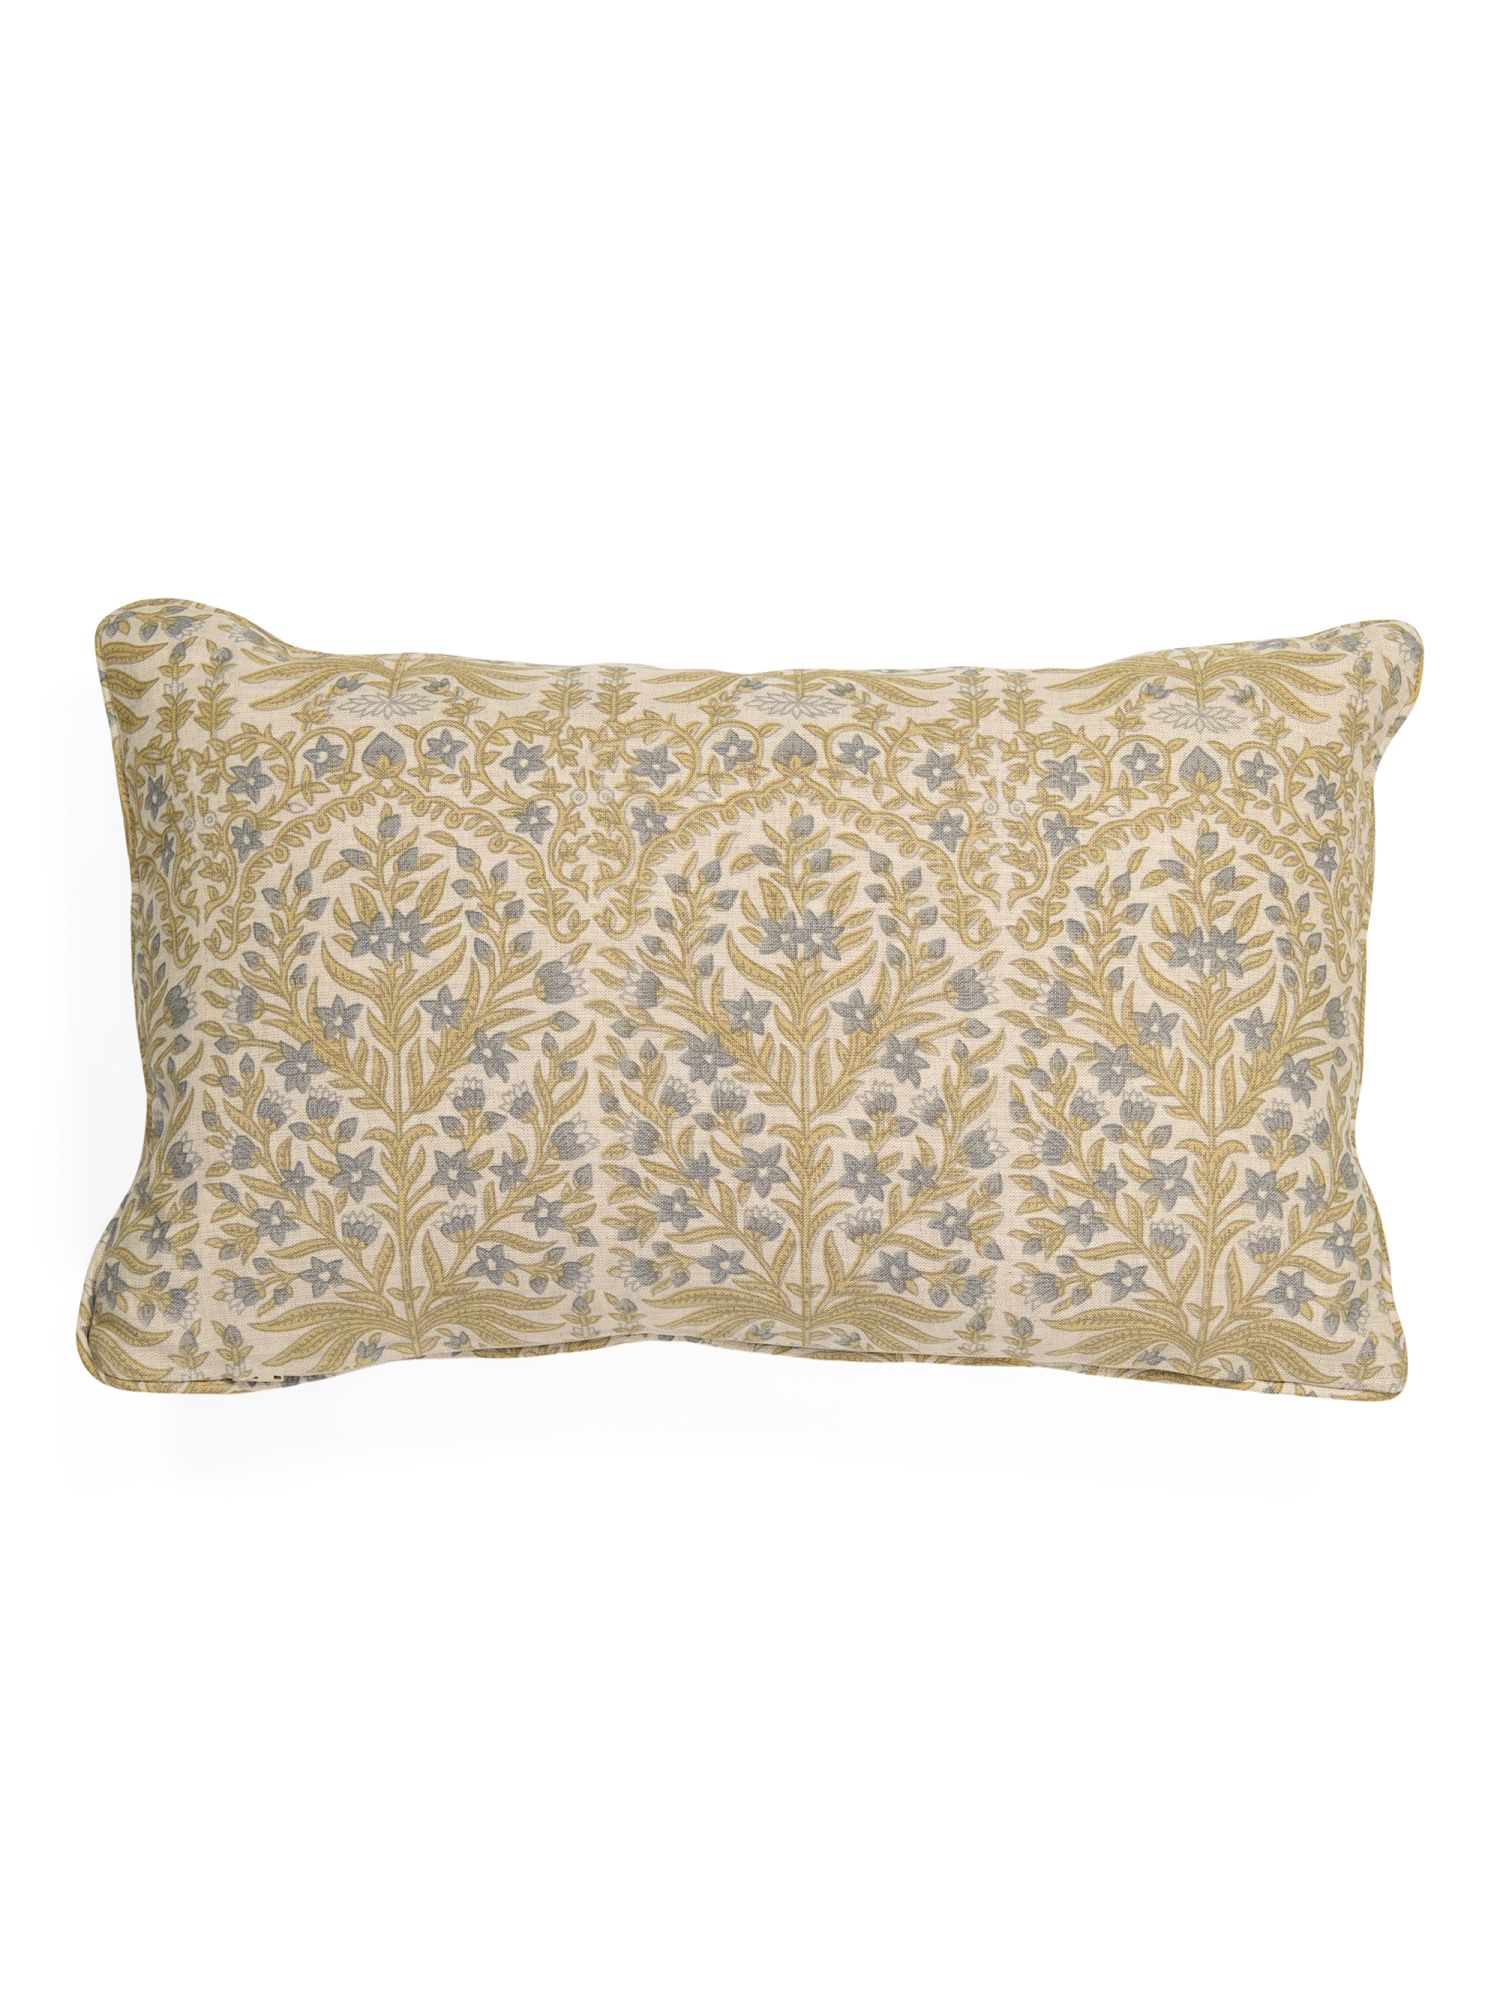 12x20 Linen Printed Pillow | The Global Decor Shop | Marshalls | Marshalls